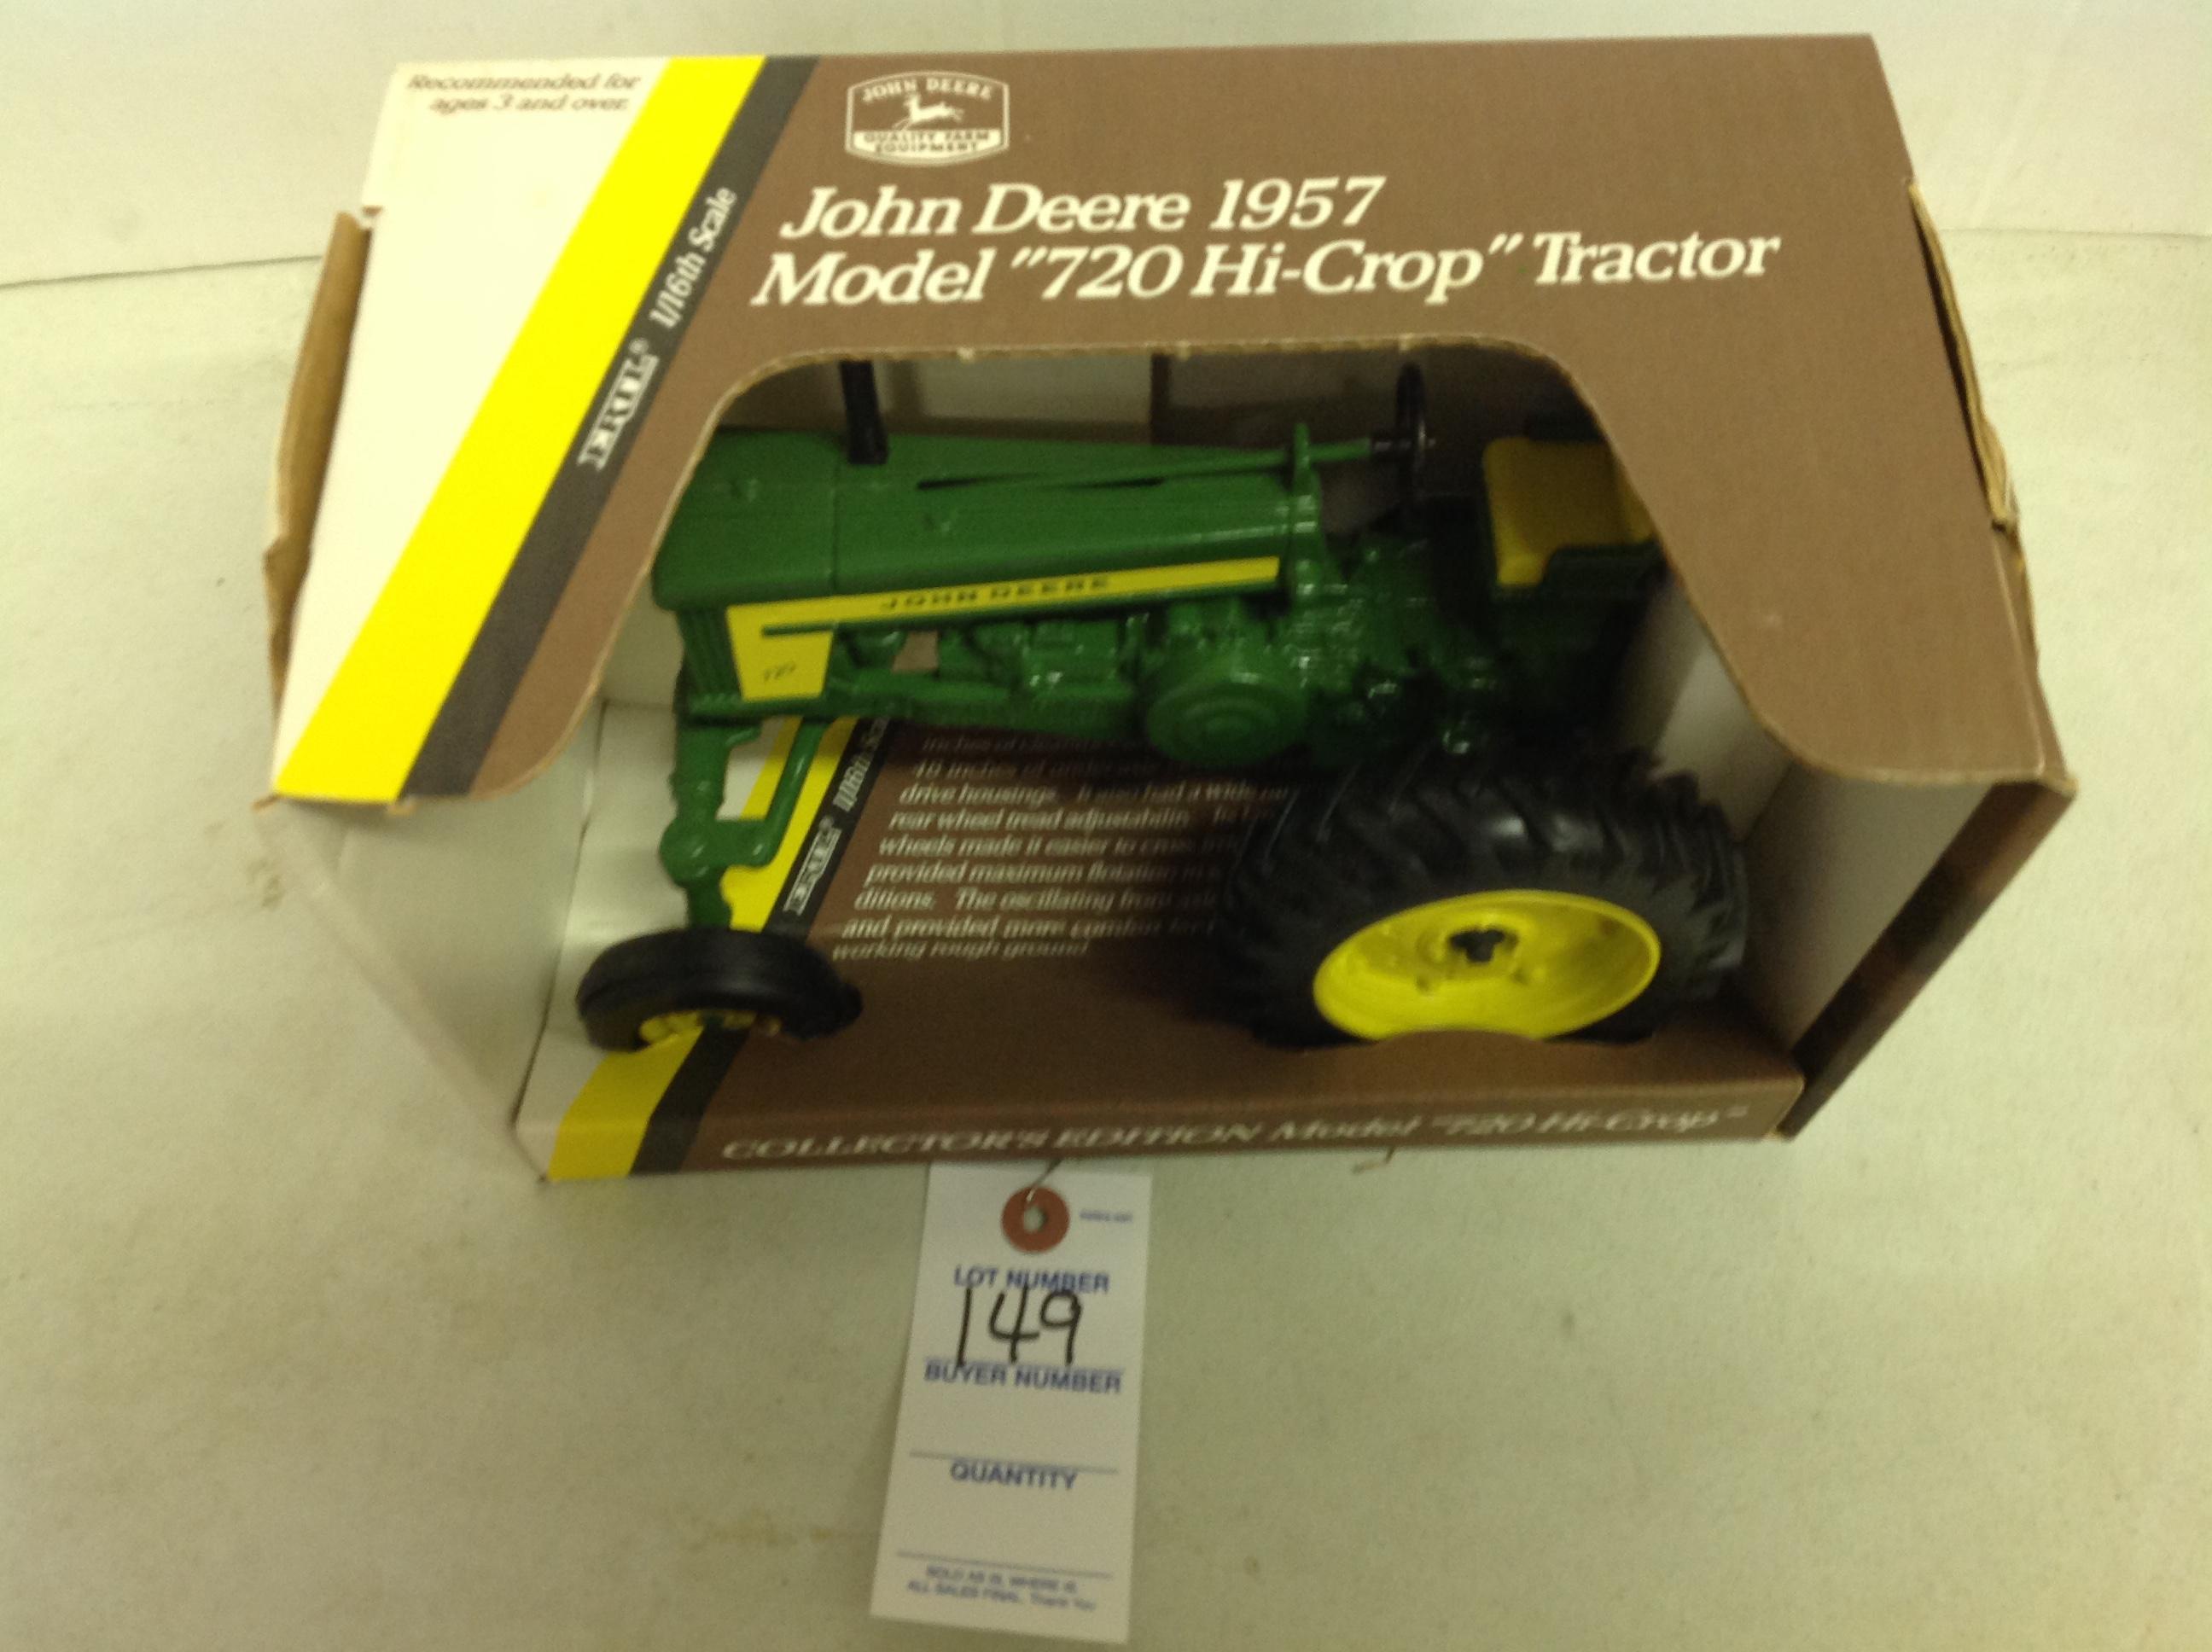 John Deere Model 720 Hi-Crop, Collectors Edition